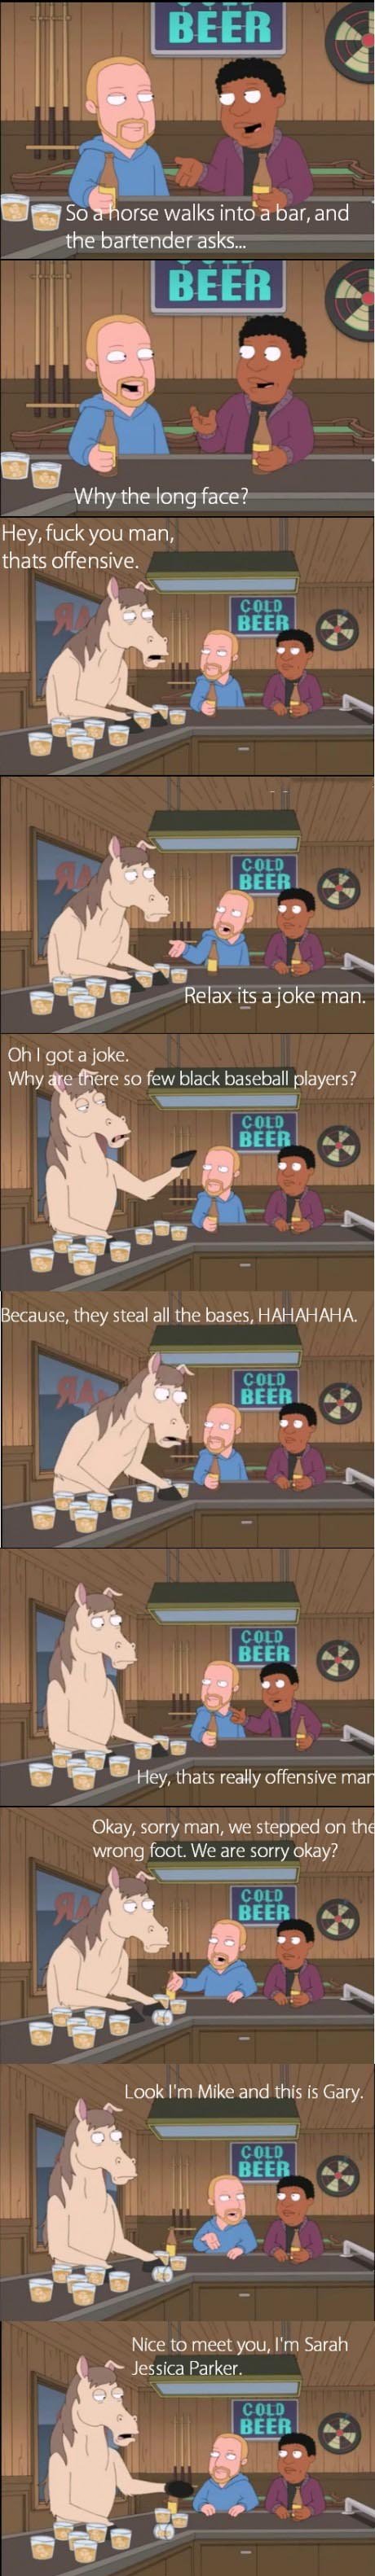 So a horse walks into a bar...